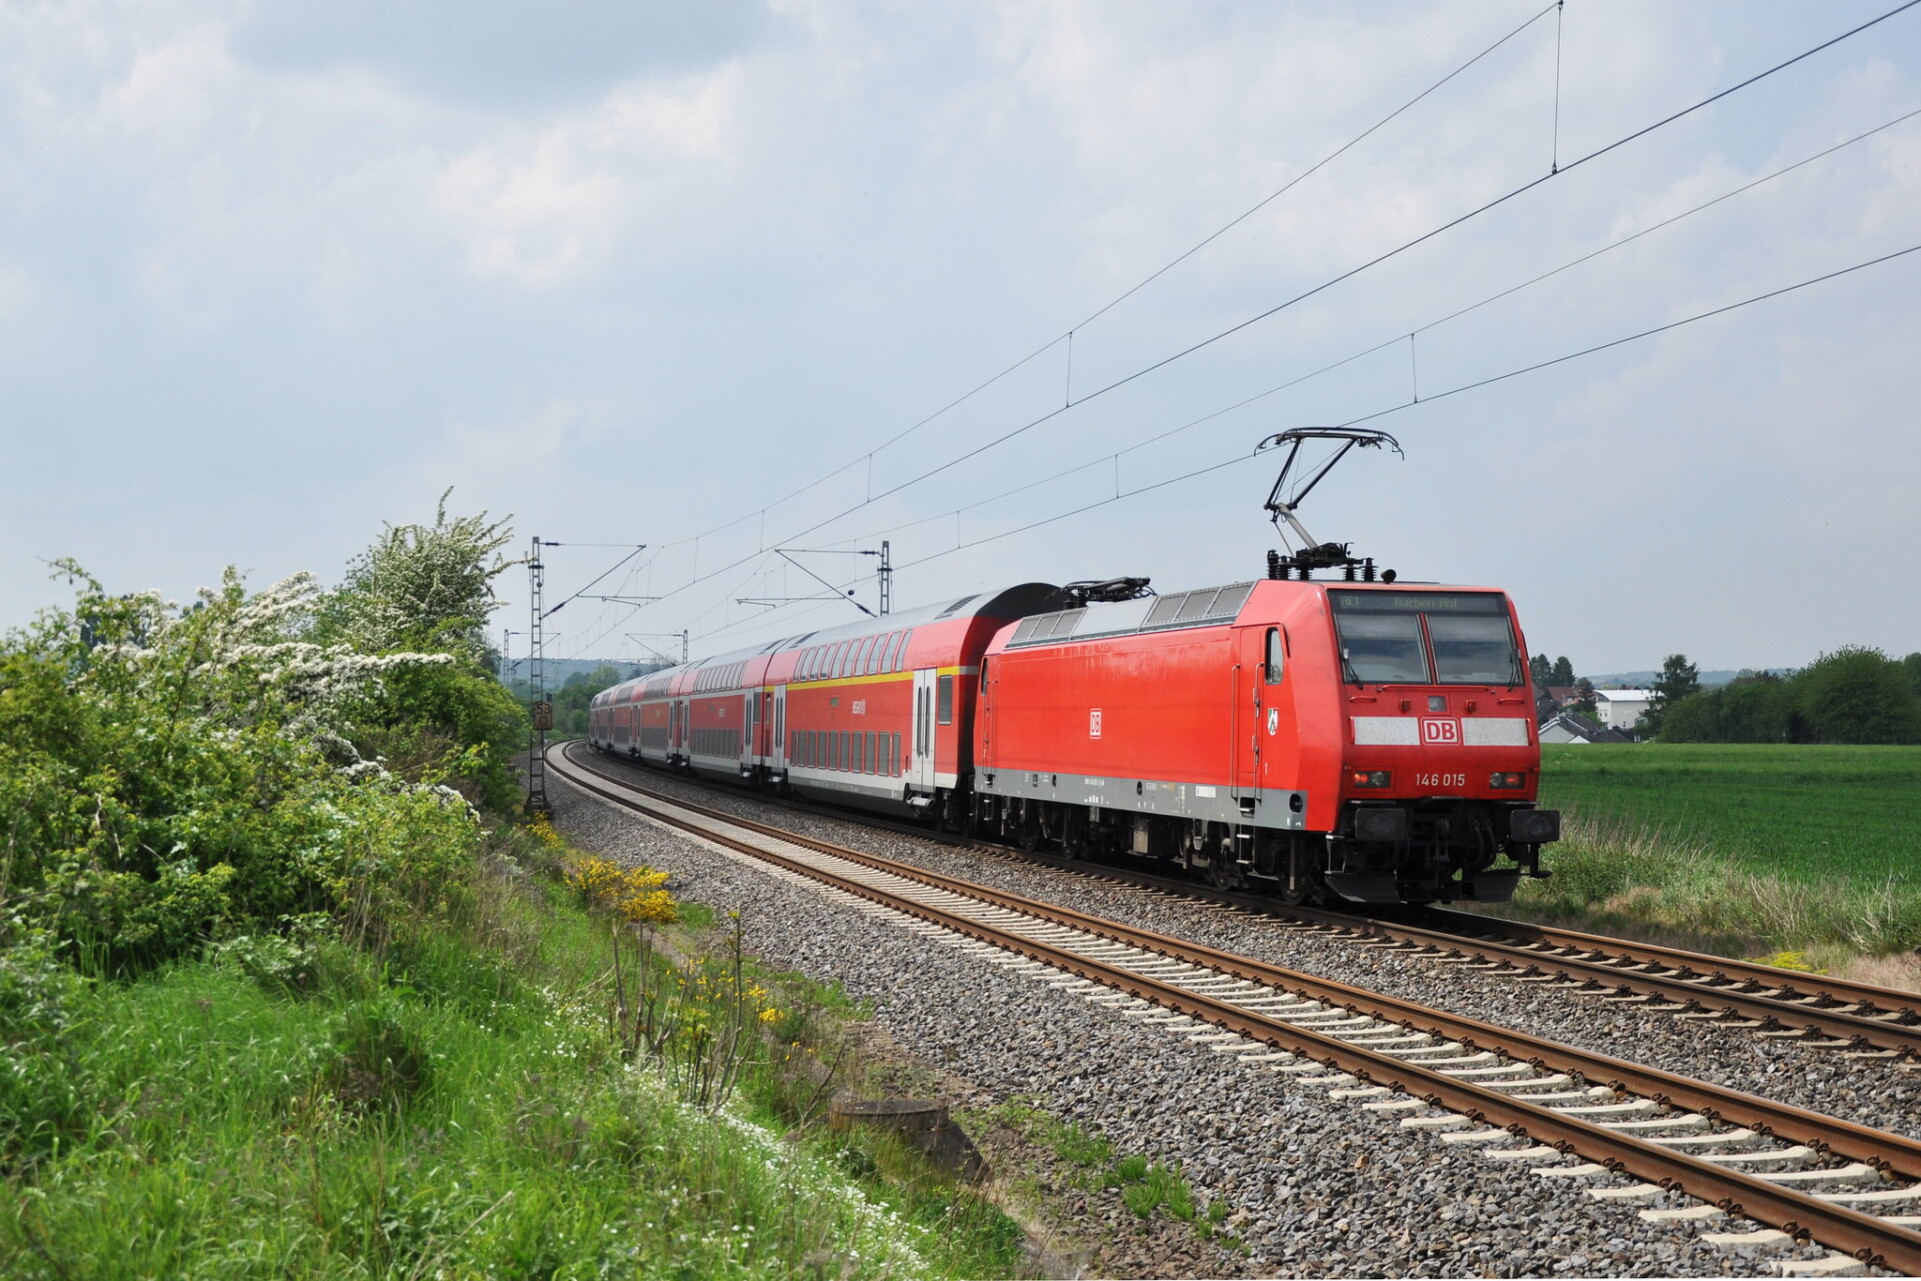 "146 015 / DB Regio NRW // Eschweiler / 1. Mai 2014" by InterCityImpress is licensed under CC BY-SA 2.0.